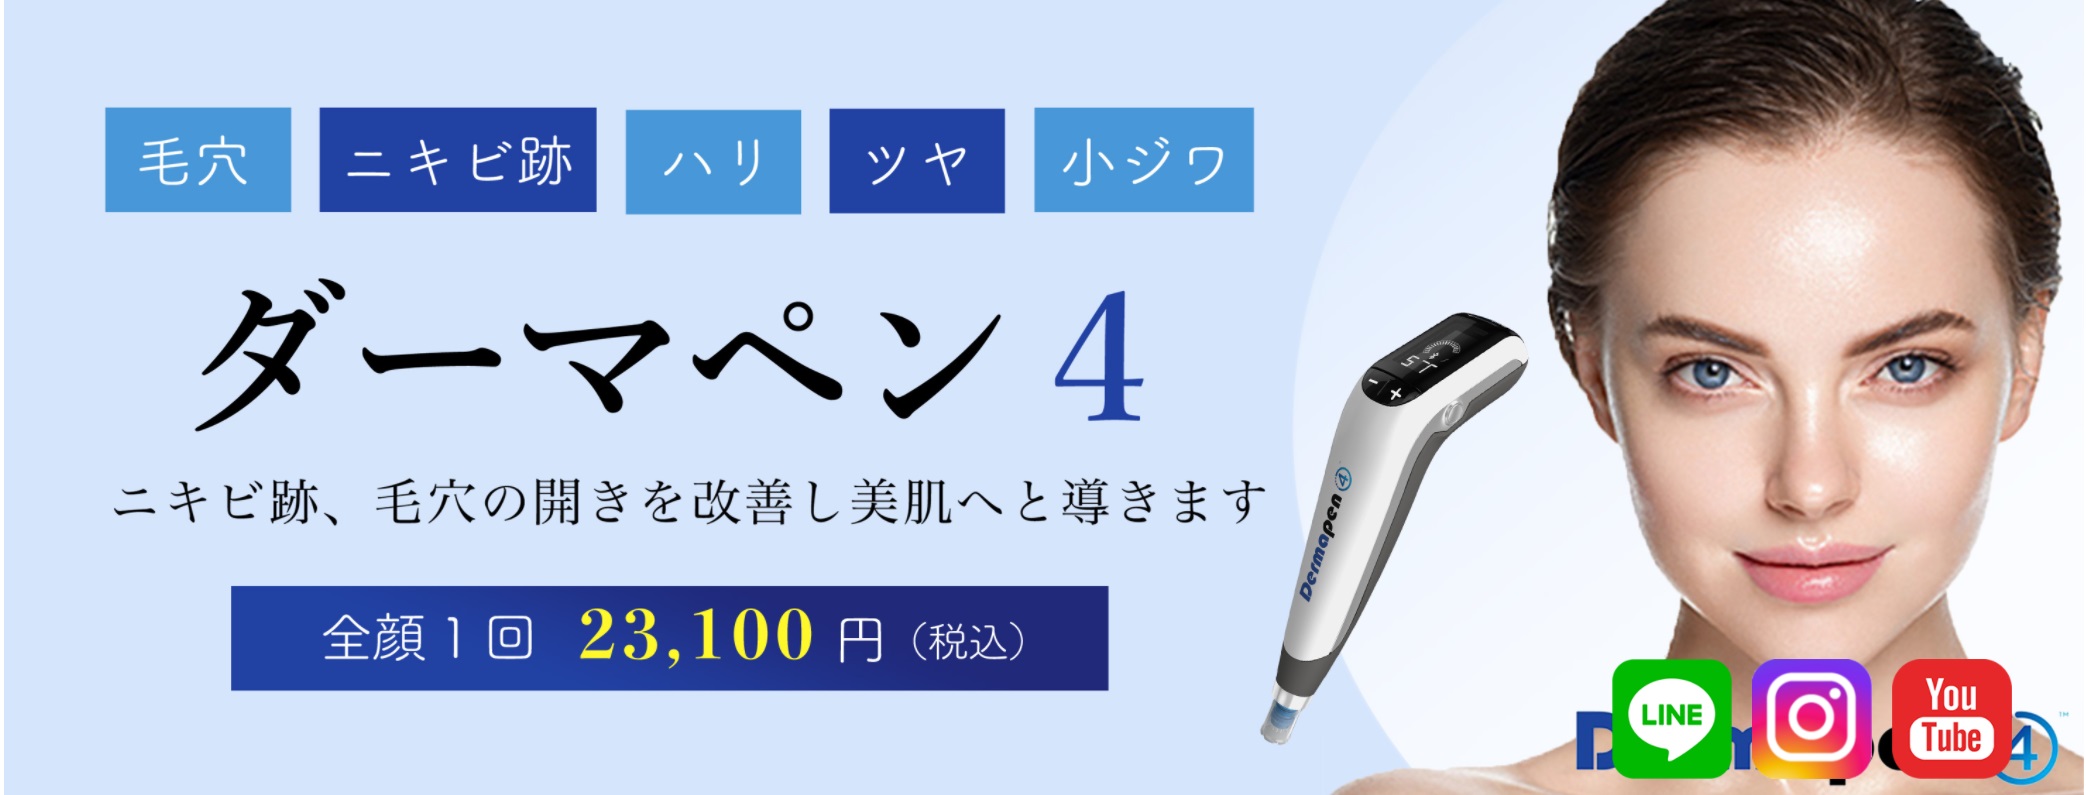 奈良でダーマペンが安いおすすめのえいご皮フ科奈良院